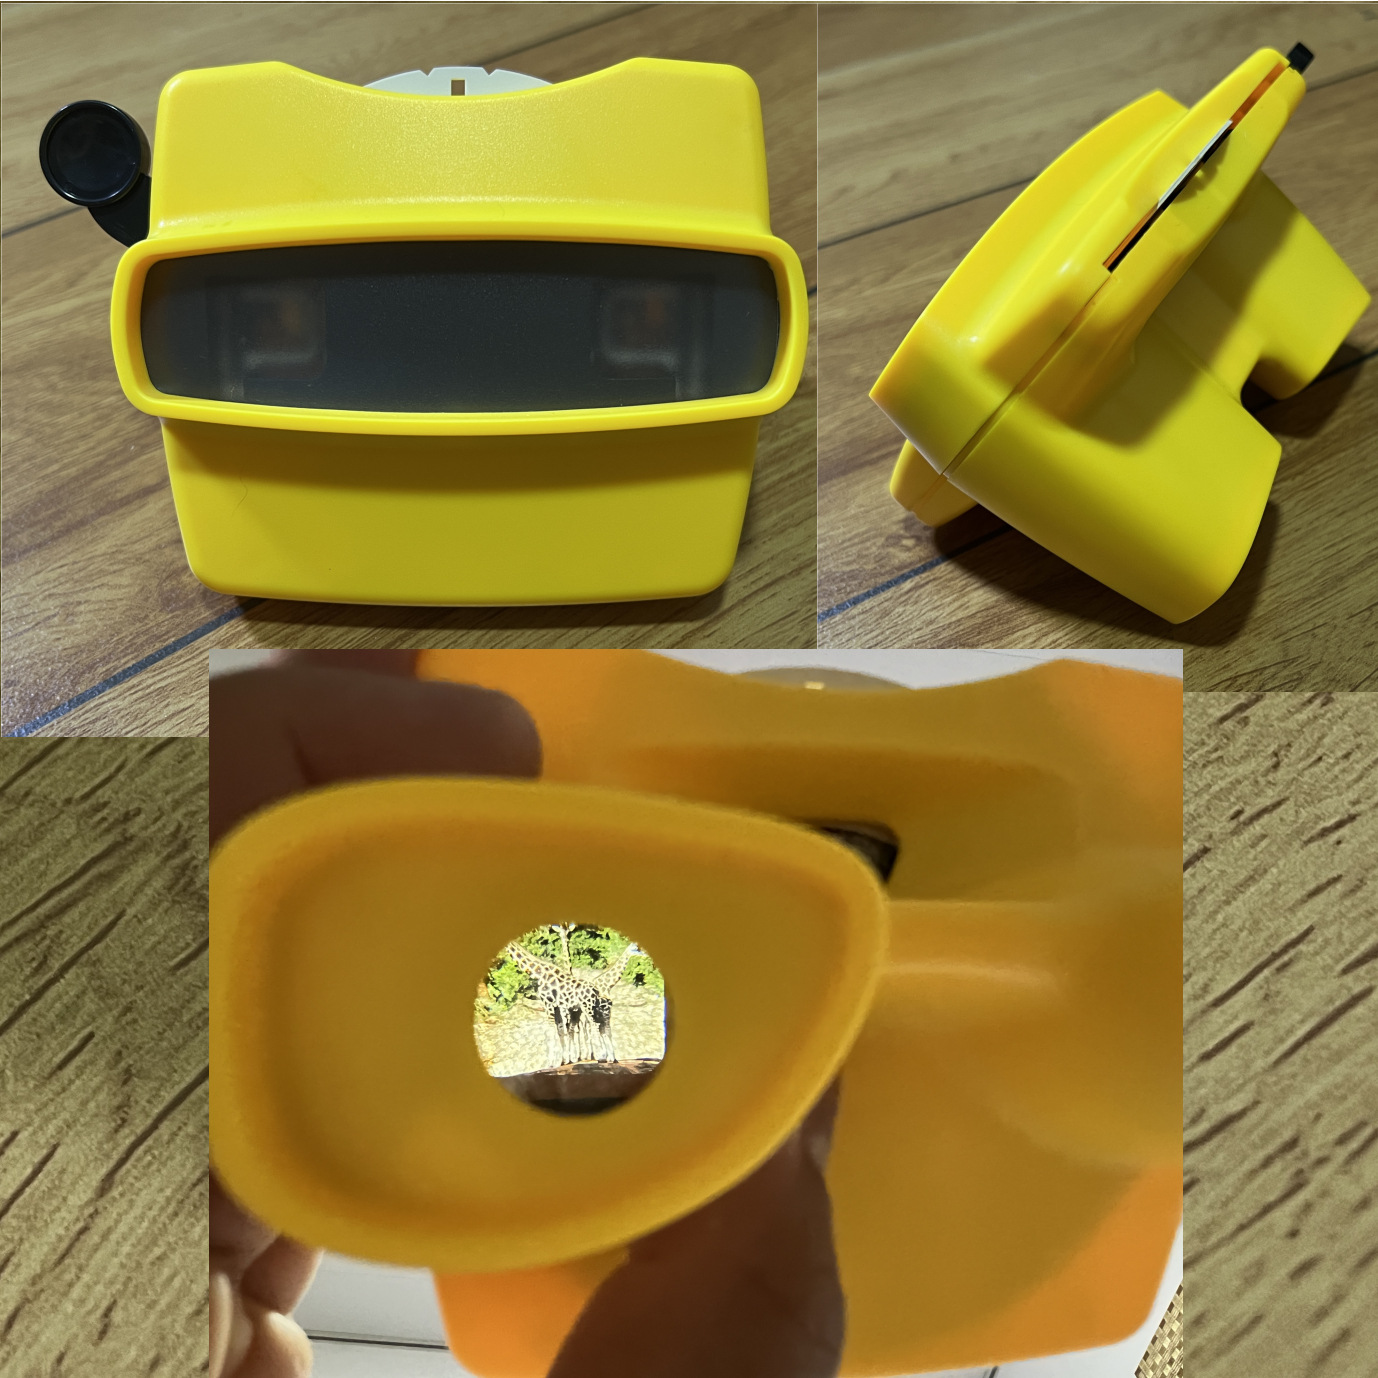 3D观景机菲林碟片玩具胶卷立体图片观看器外贸礼赠品客版照片内容